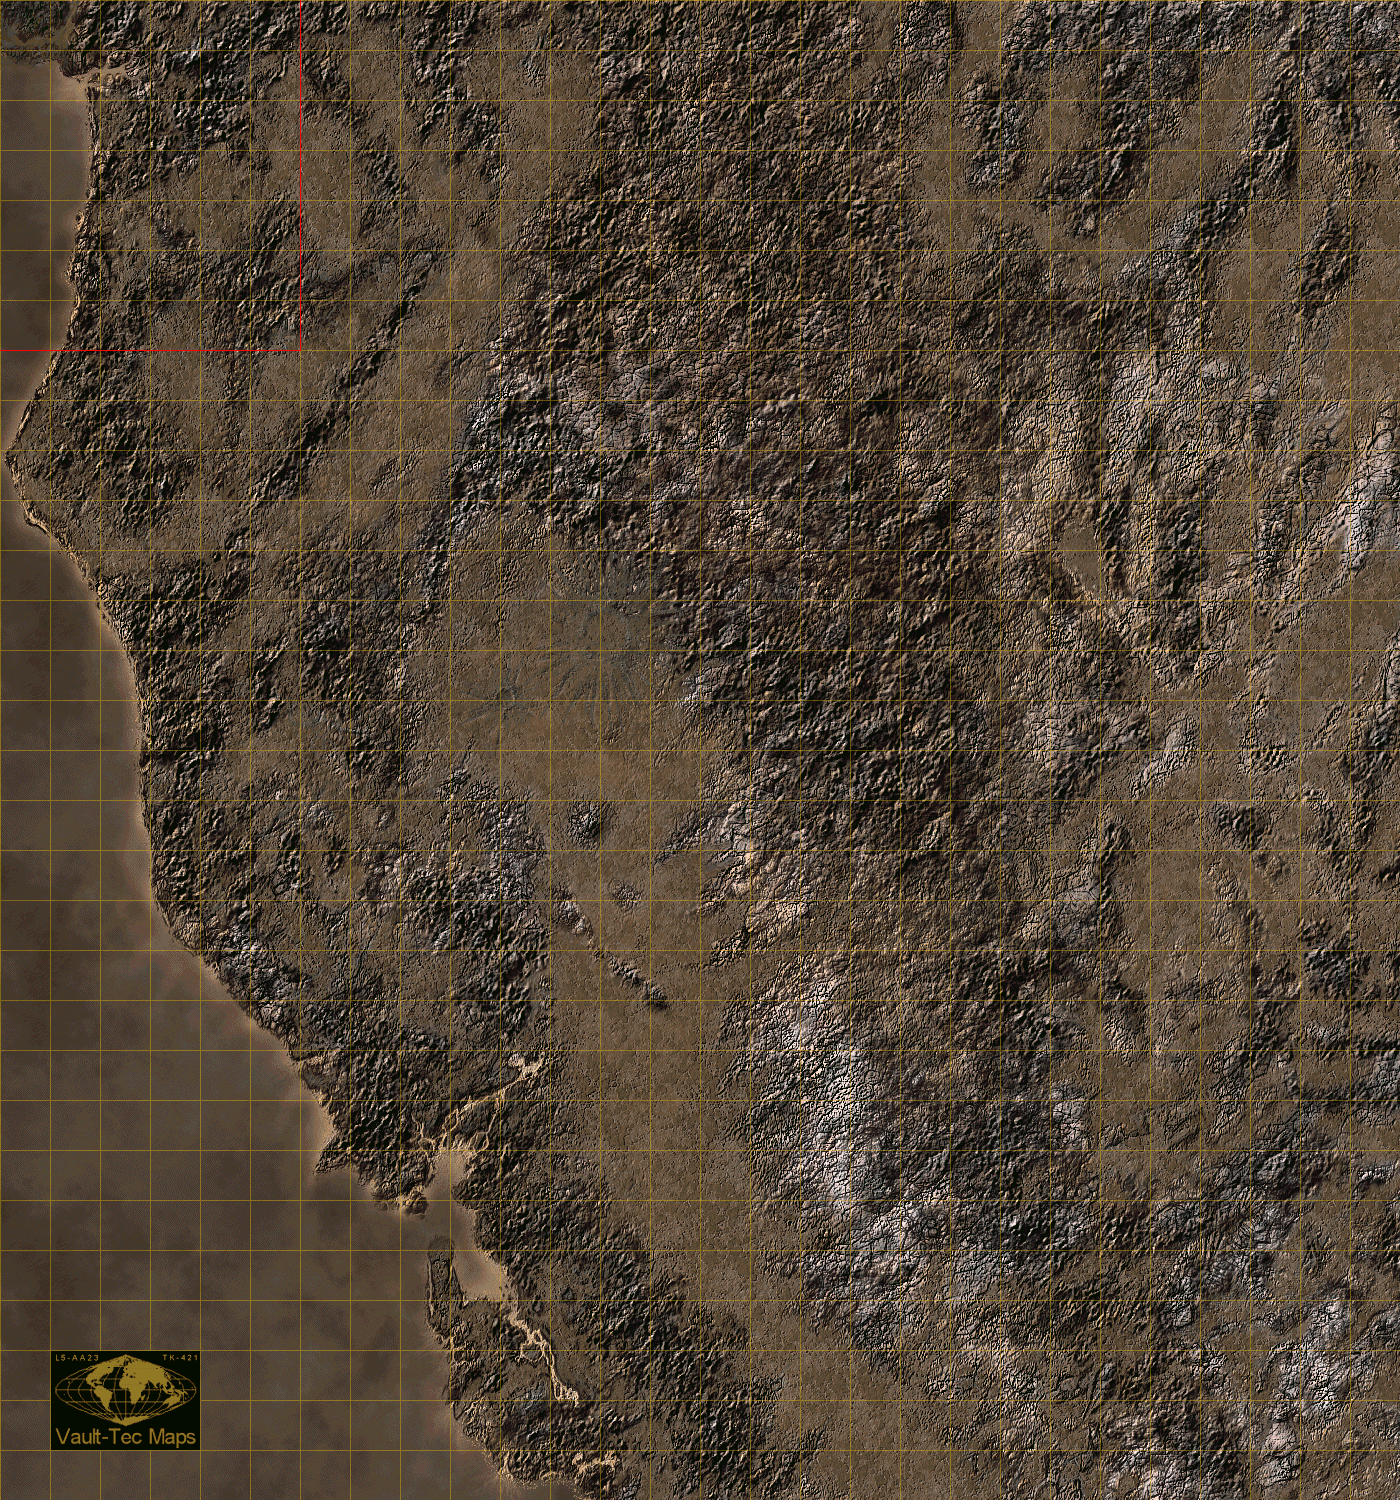 Fallout 4 map of nuka world фото 60